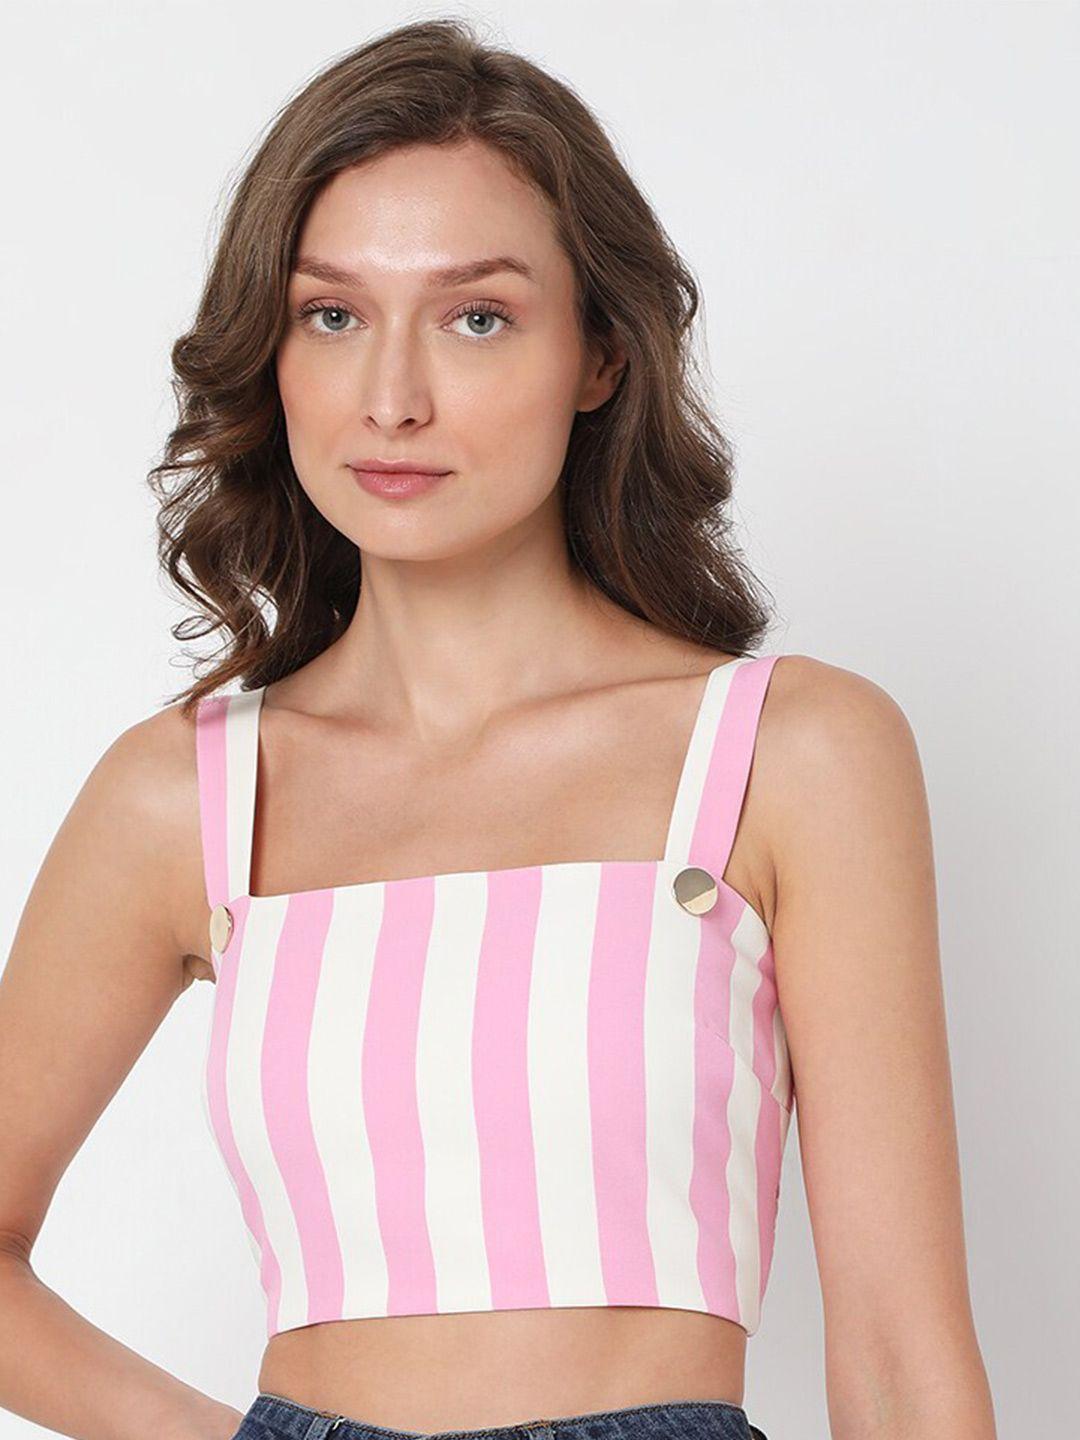 vero moda white & pink striped crop top